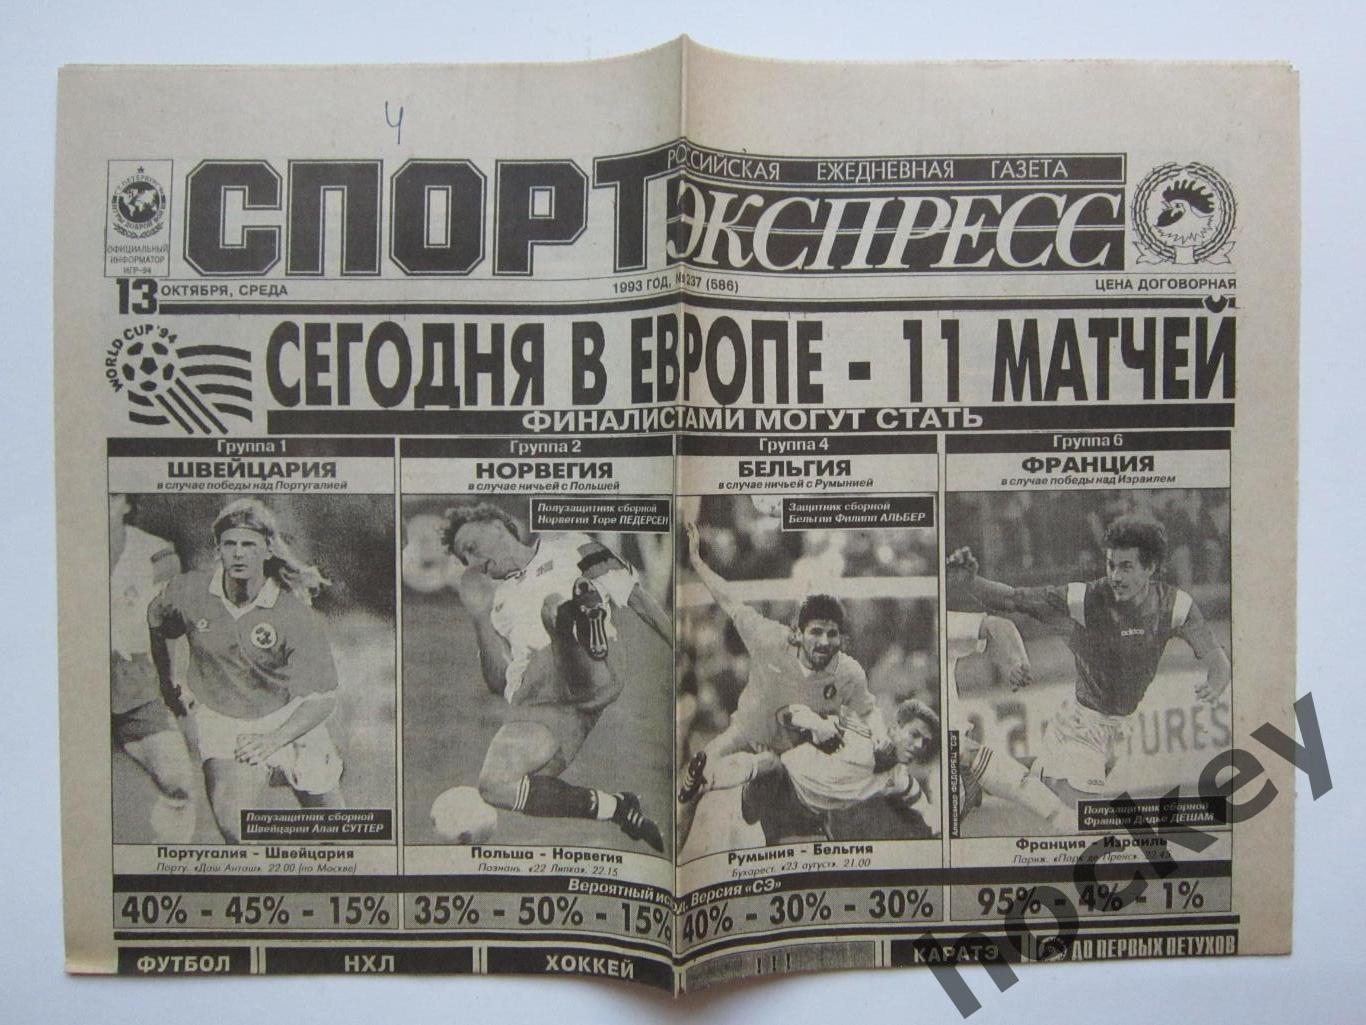 Спорт-Экспресс за 13.10.1993